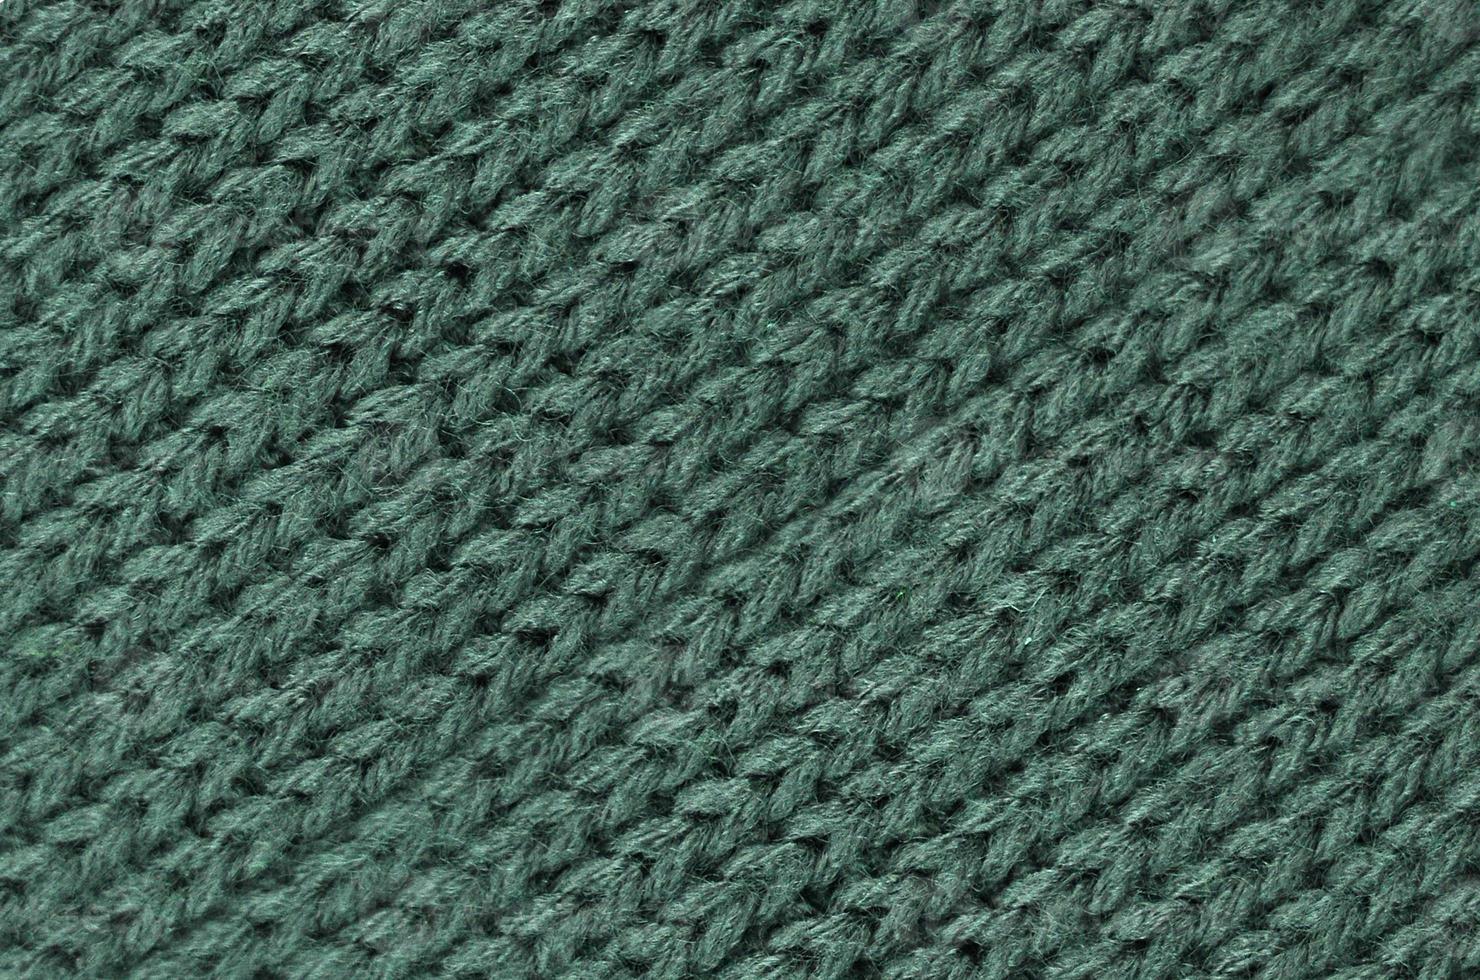 stoffa a maglia cotone, lana struttura foto